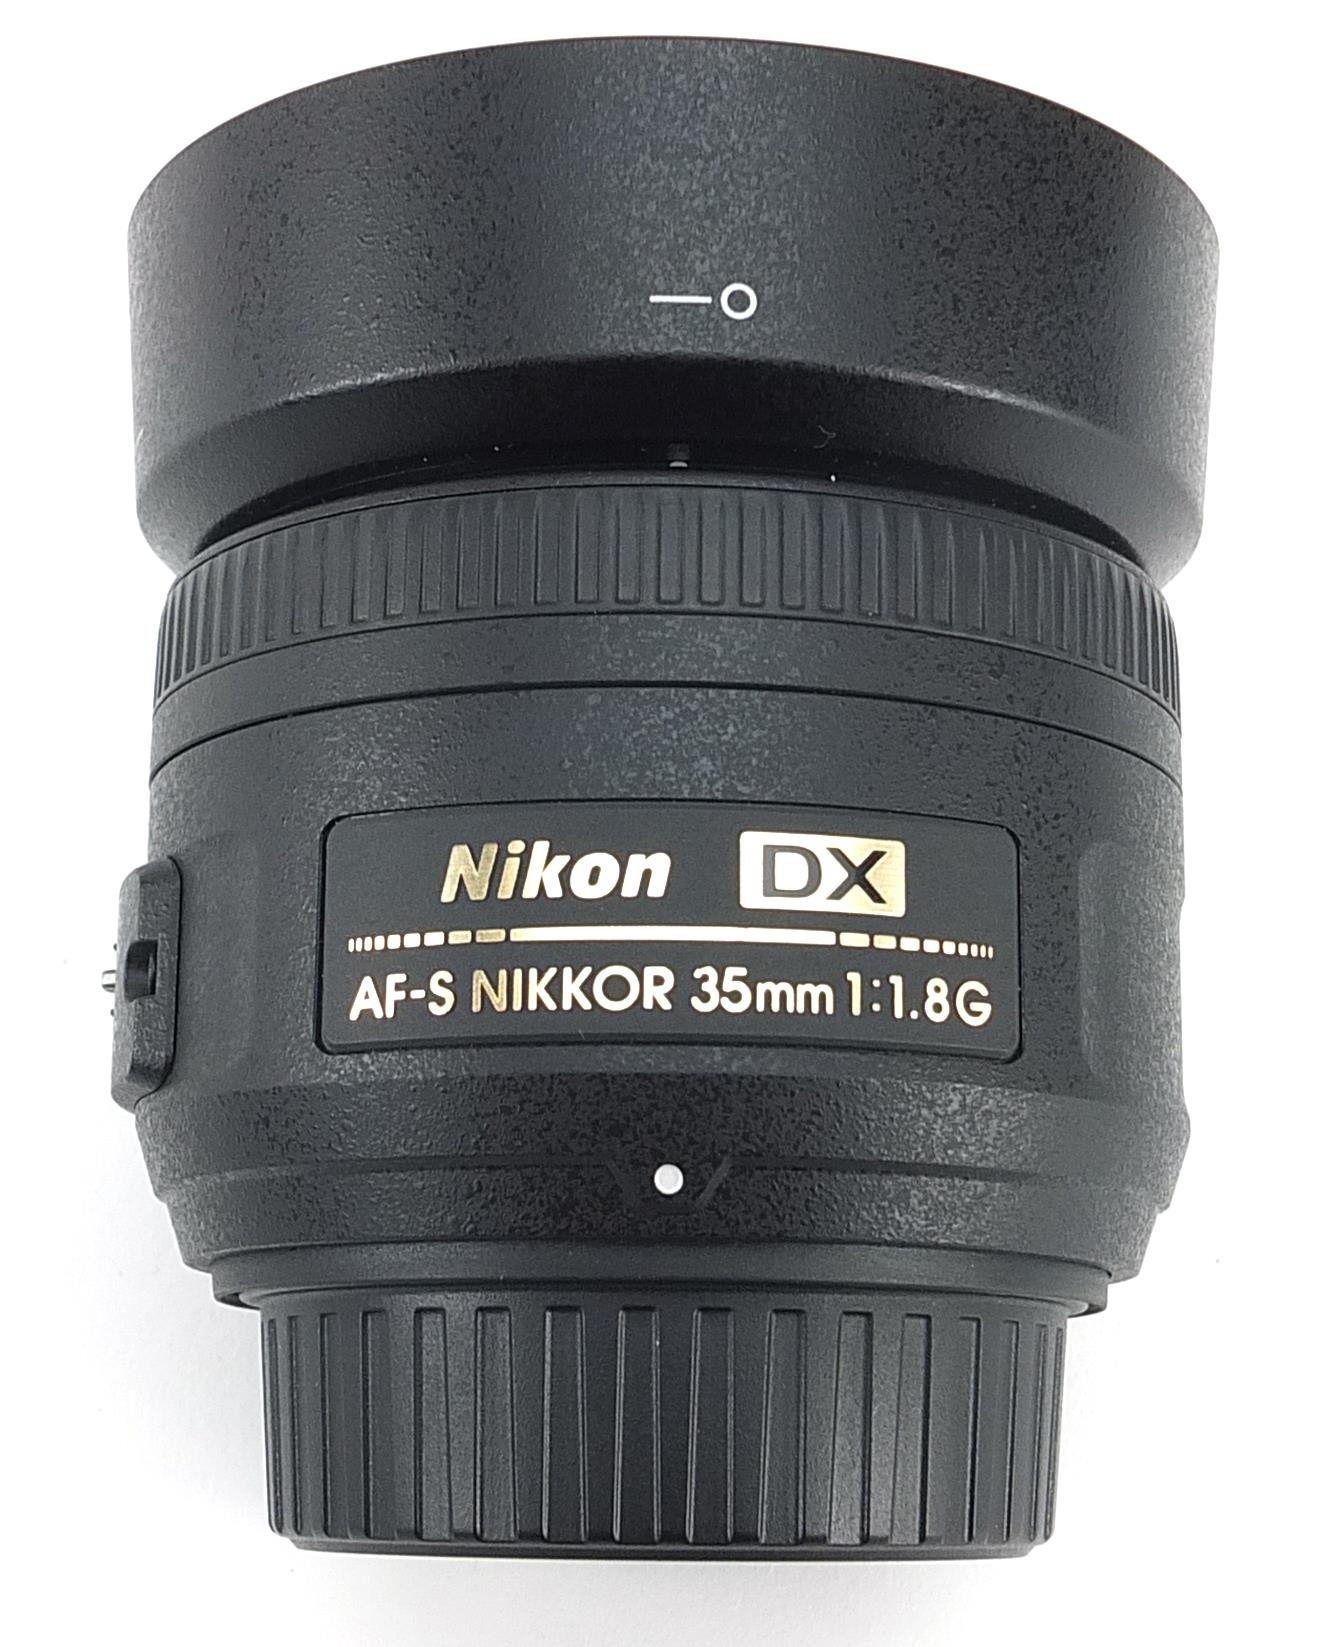 Nikon DX camera lens, AF-S Nikkor 35mm - Image 3 of 4